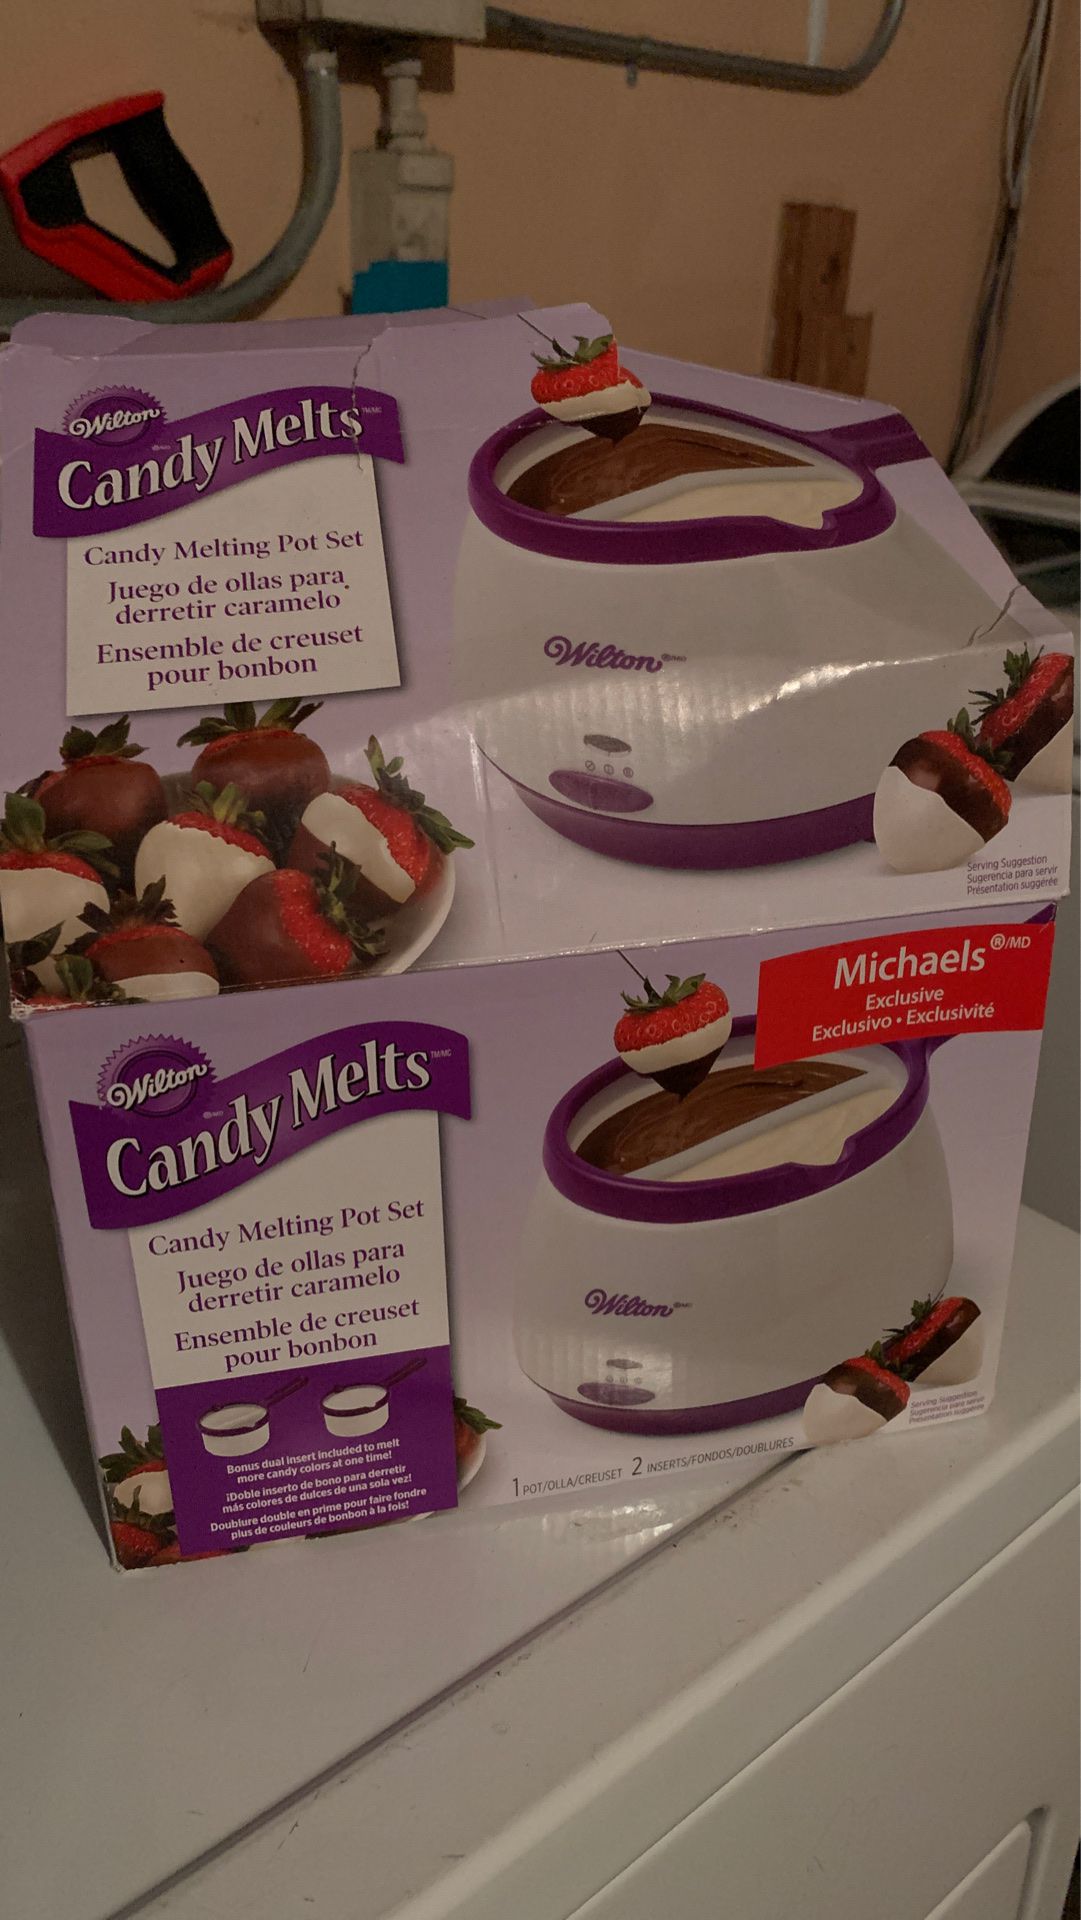 Candy Melts pot